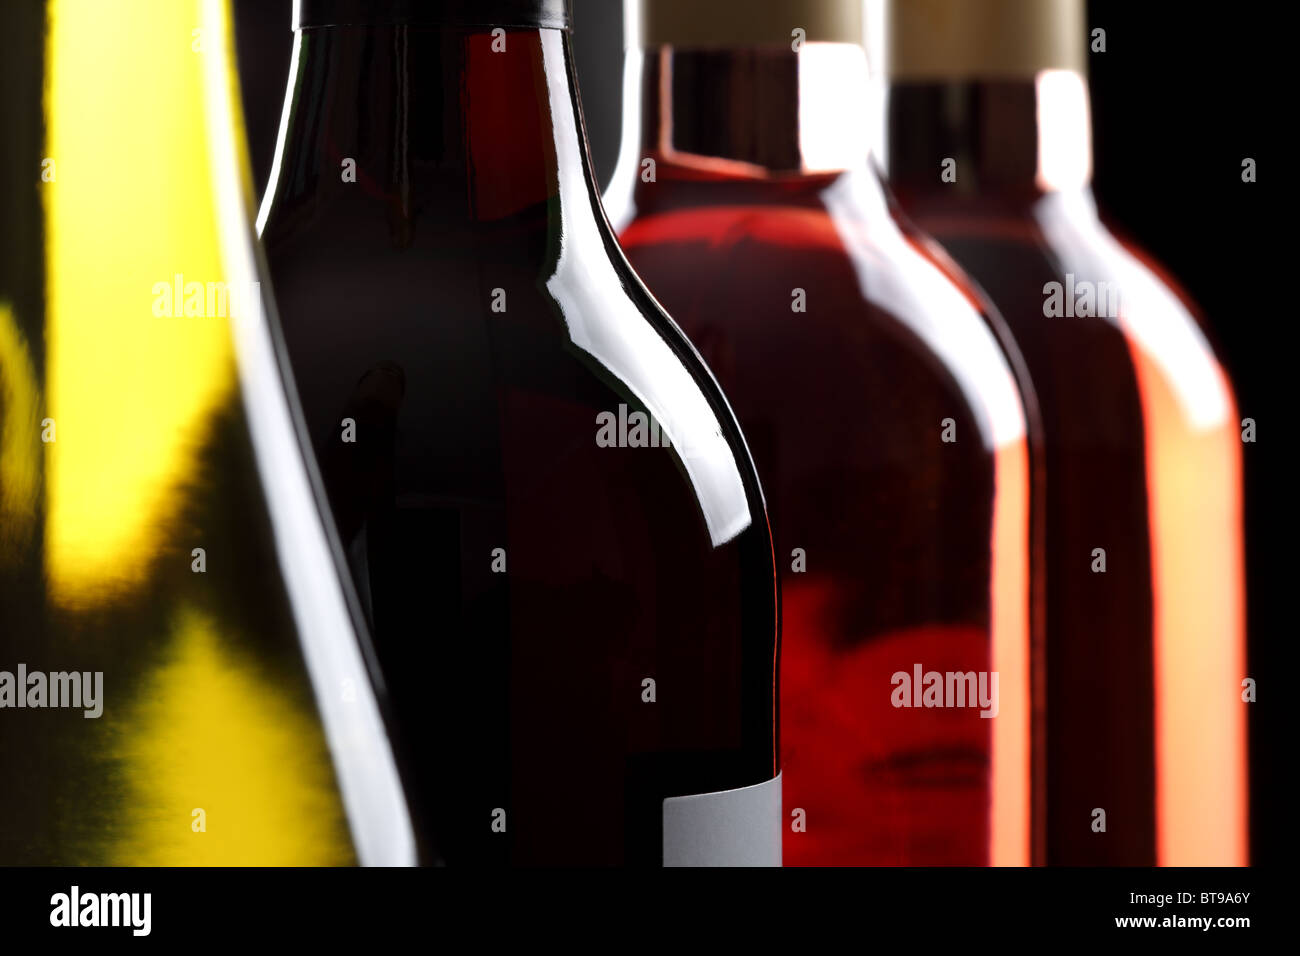 Flaschen Wein Stockfoto